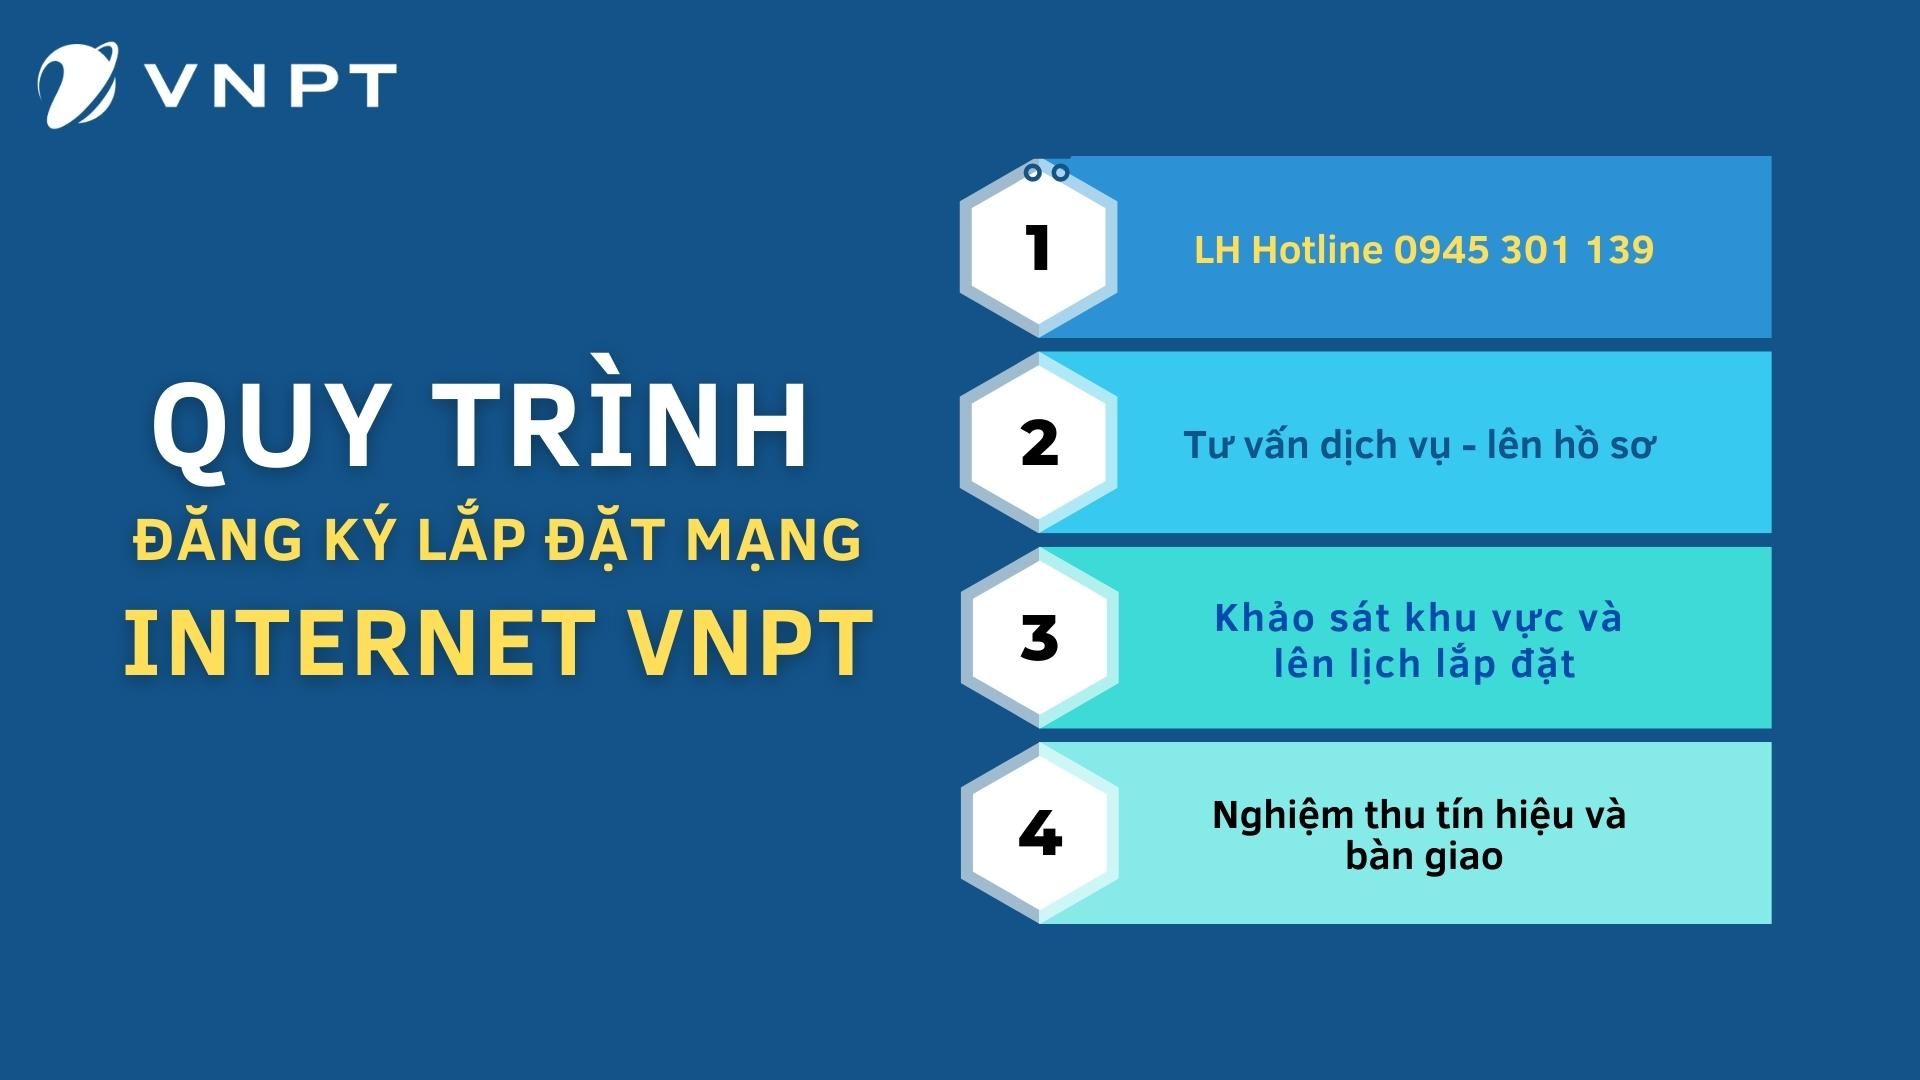 Quy trình đăng ký lắp đặt mạng internet VNPT nhanh chóng